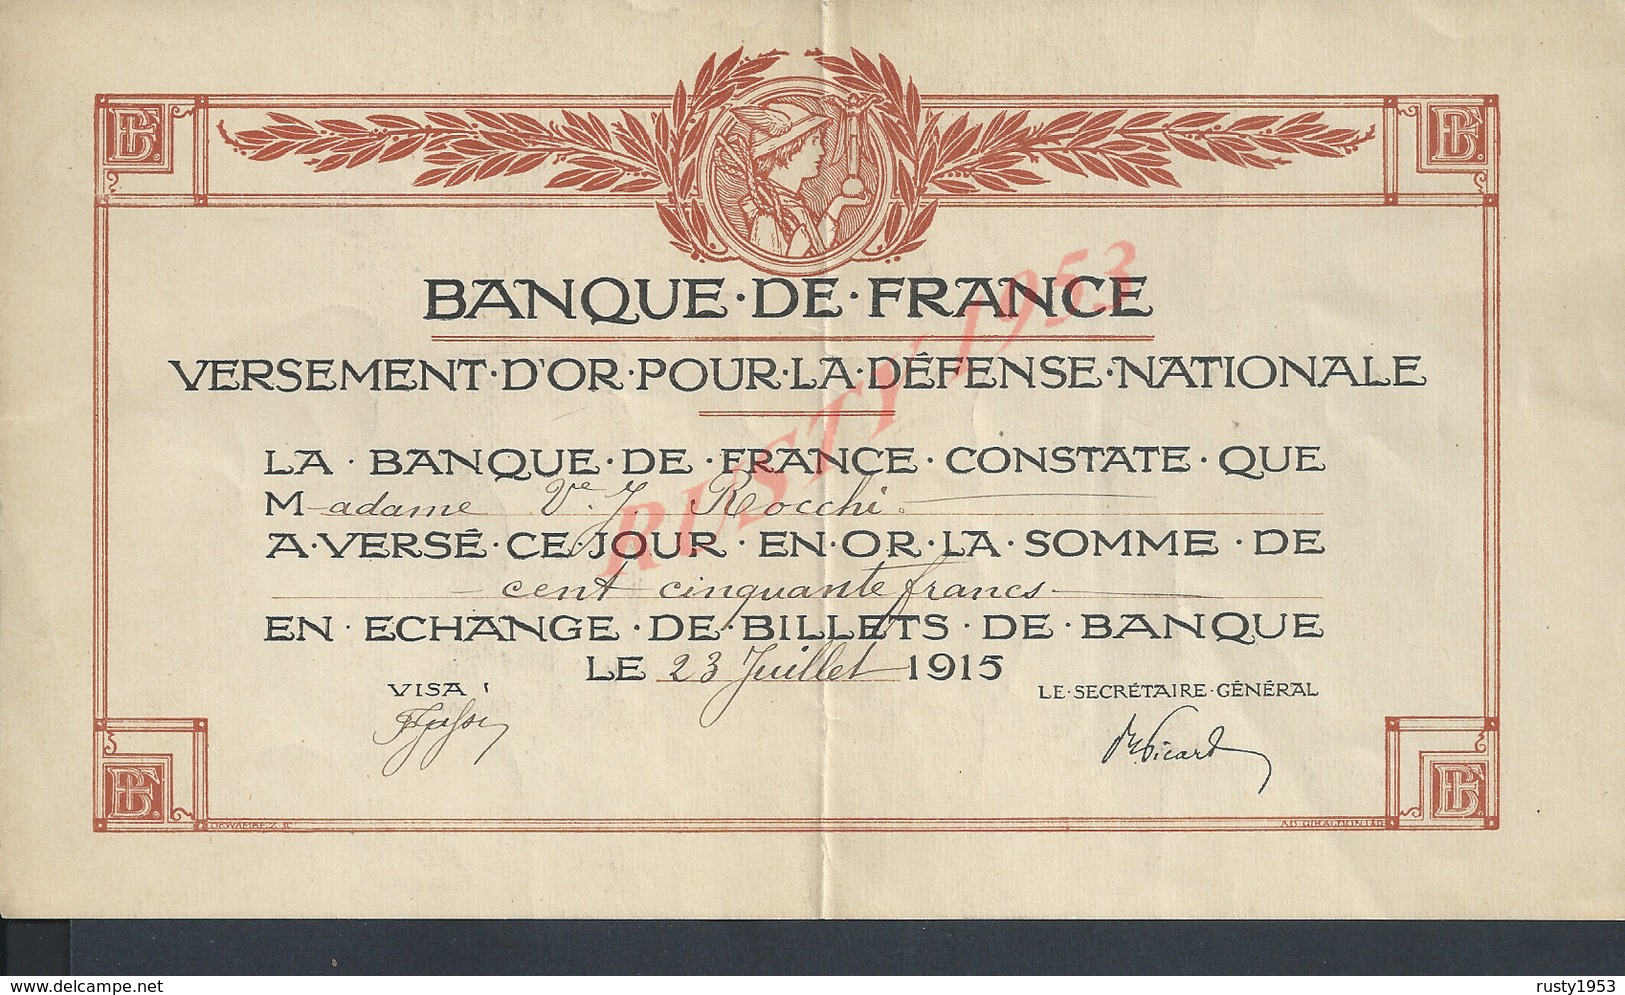 MILITARIA BANQUE DE FRANCE VERSEMENT D OR POUR LA DEFENSE NATIONALE ILLUSTRÉE 1915 DE Mad J ROCCHI : - 1914-18